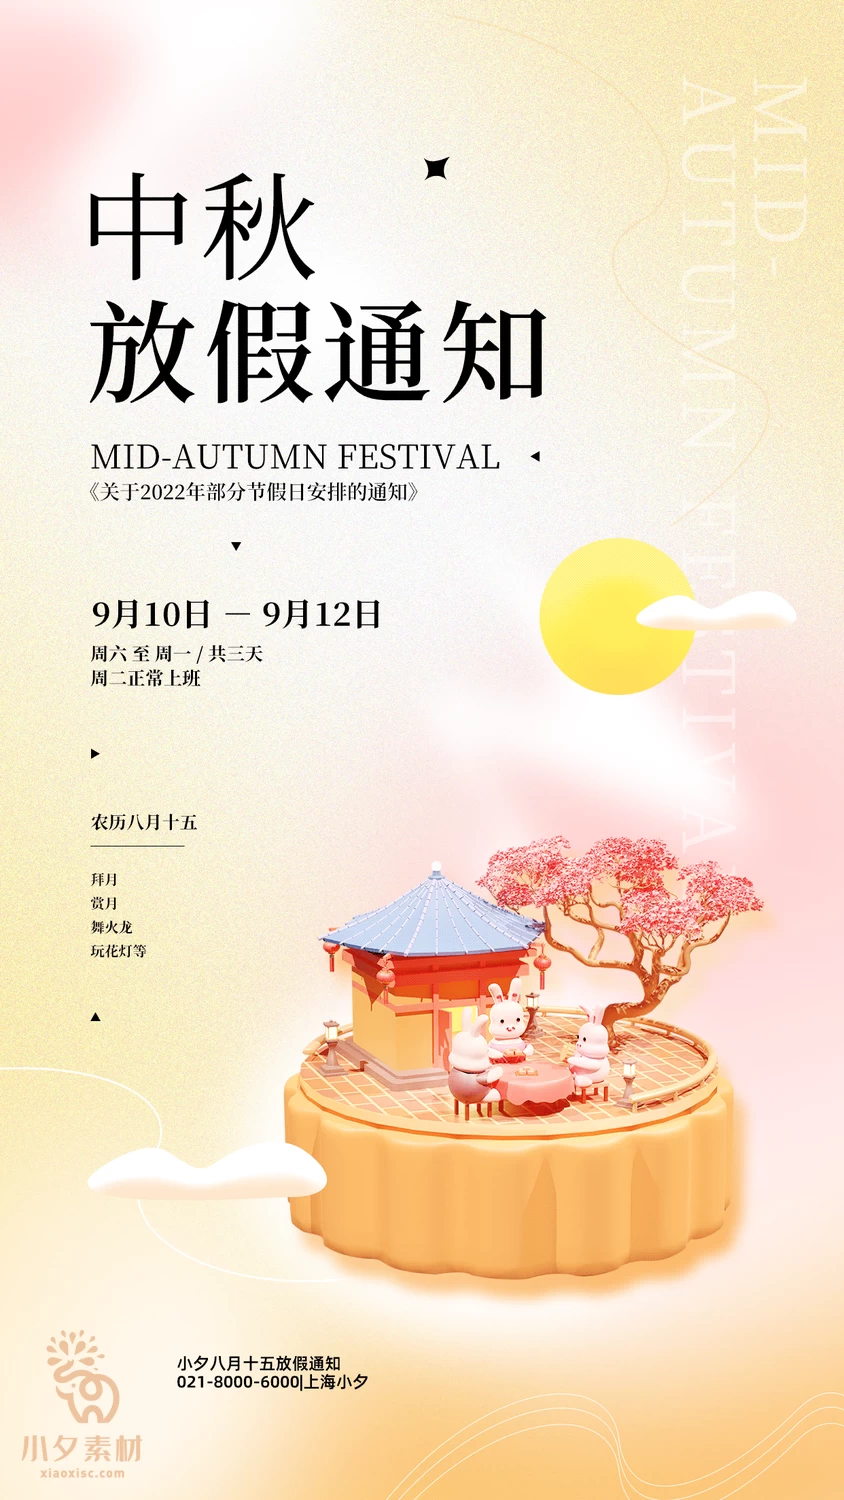 中秋节节日节庆放假通知海报模板PSD分层设计素材【015】